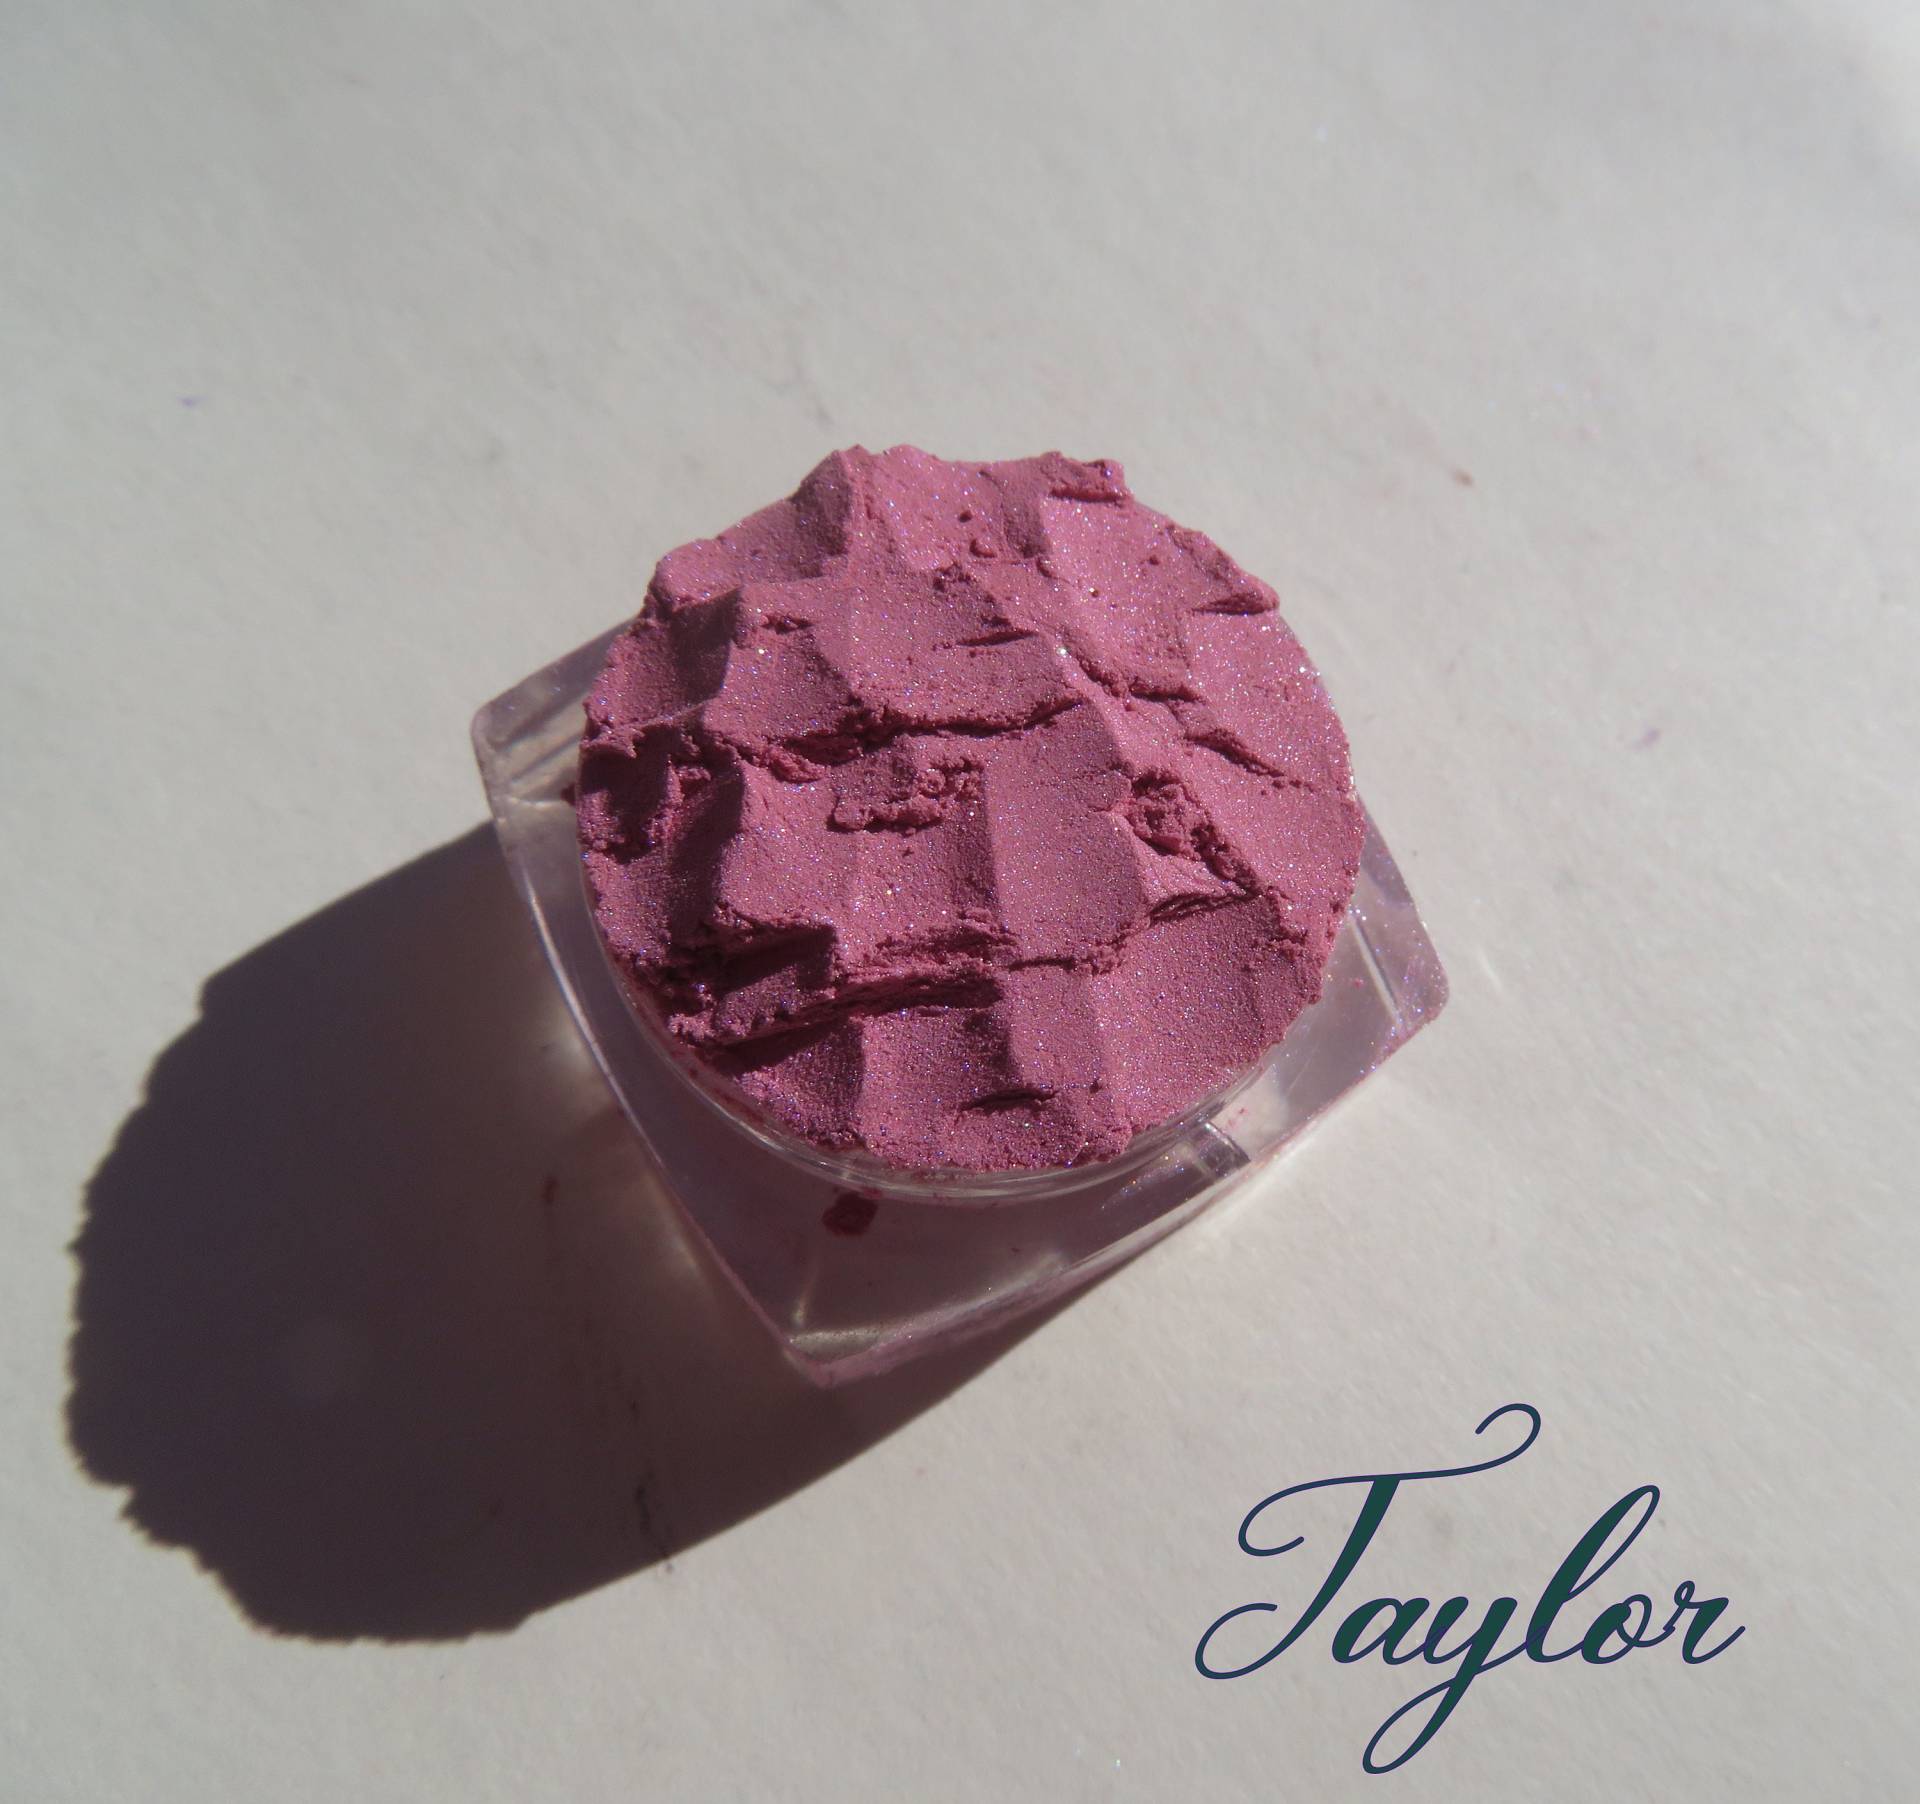 Taylor - Pale Pink Shimmer Mineral Lidschatten, Lose Pigmente Vegan Cruelty Free Eye Shadow von kmms